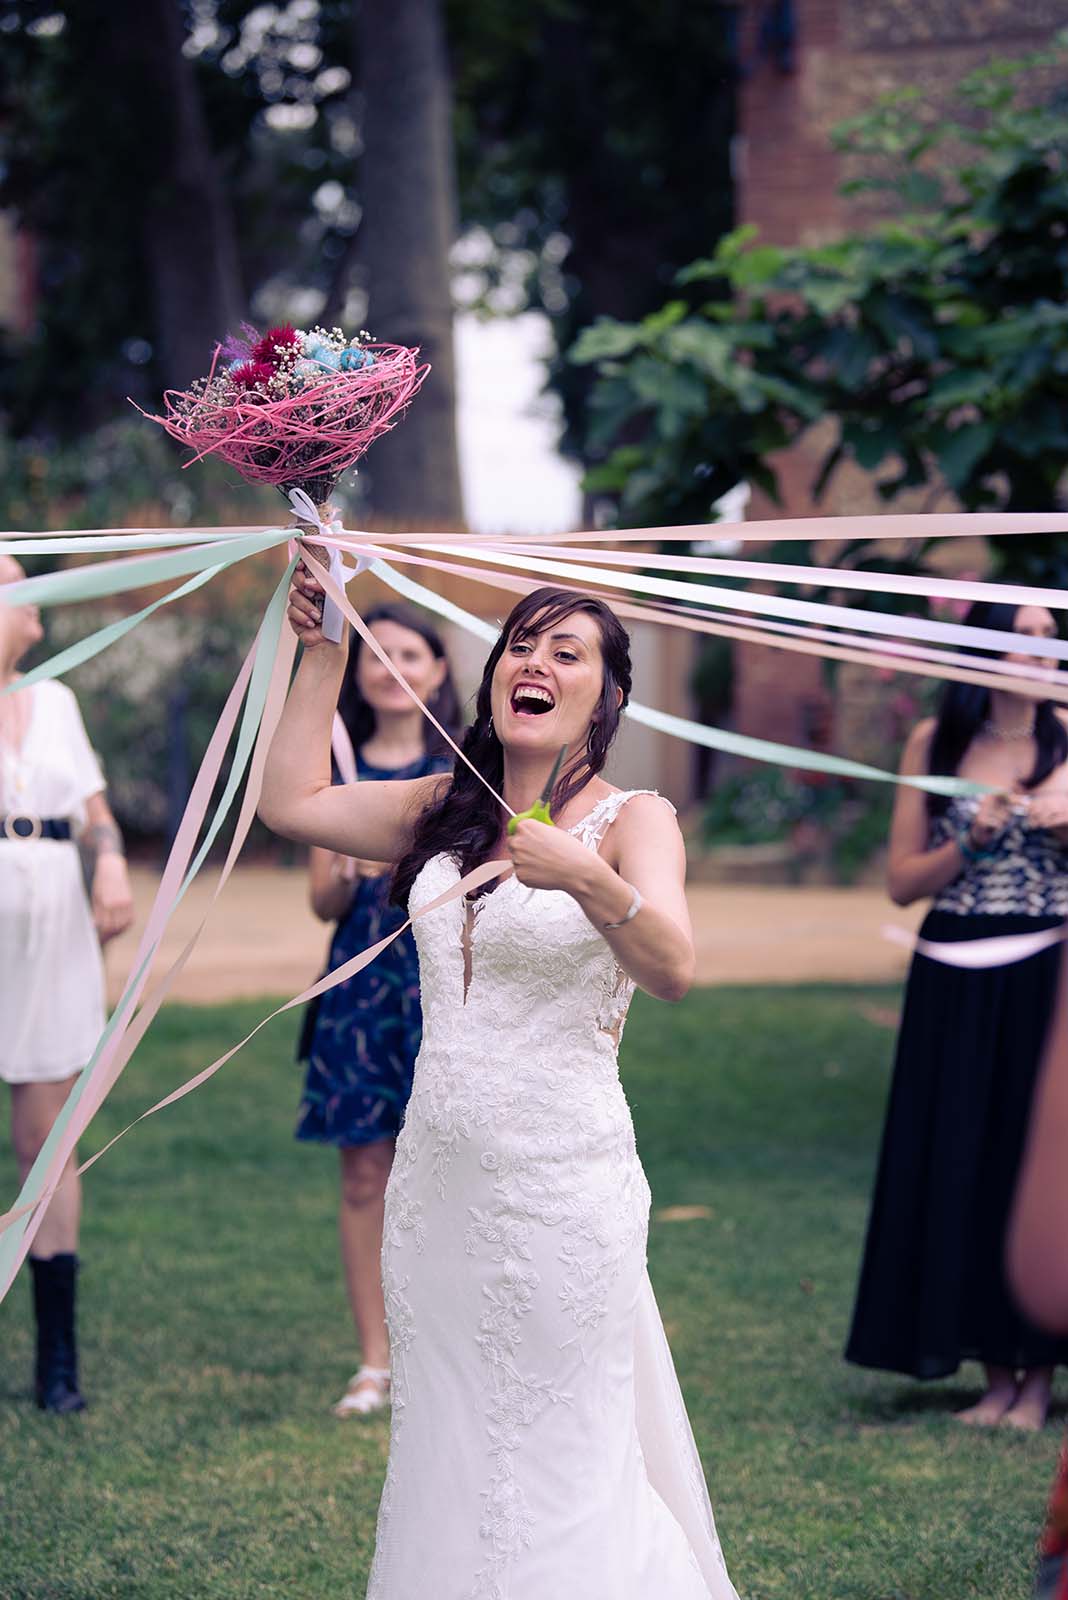 jeu du ruban lors d'un mariage on y voit la mariée éclatant de rire